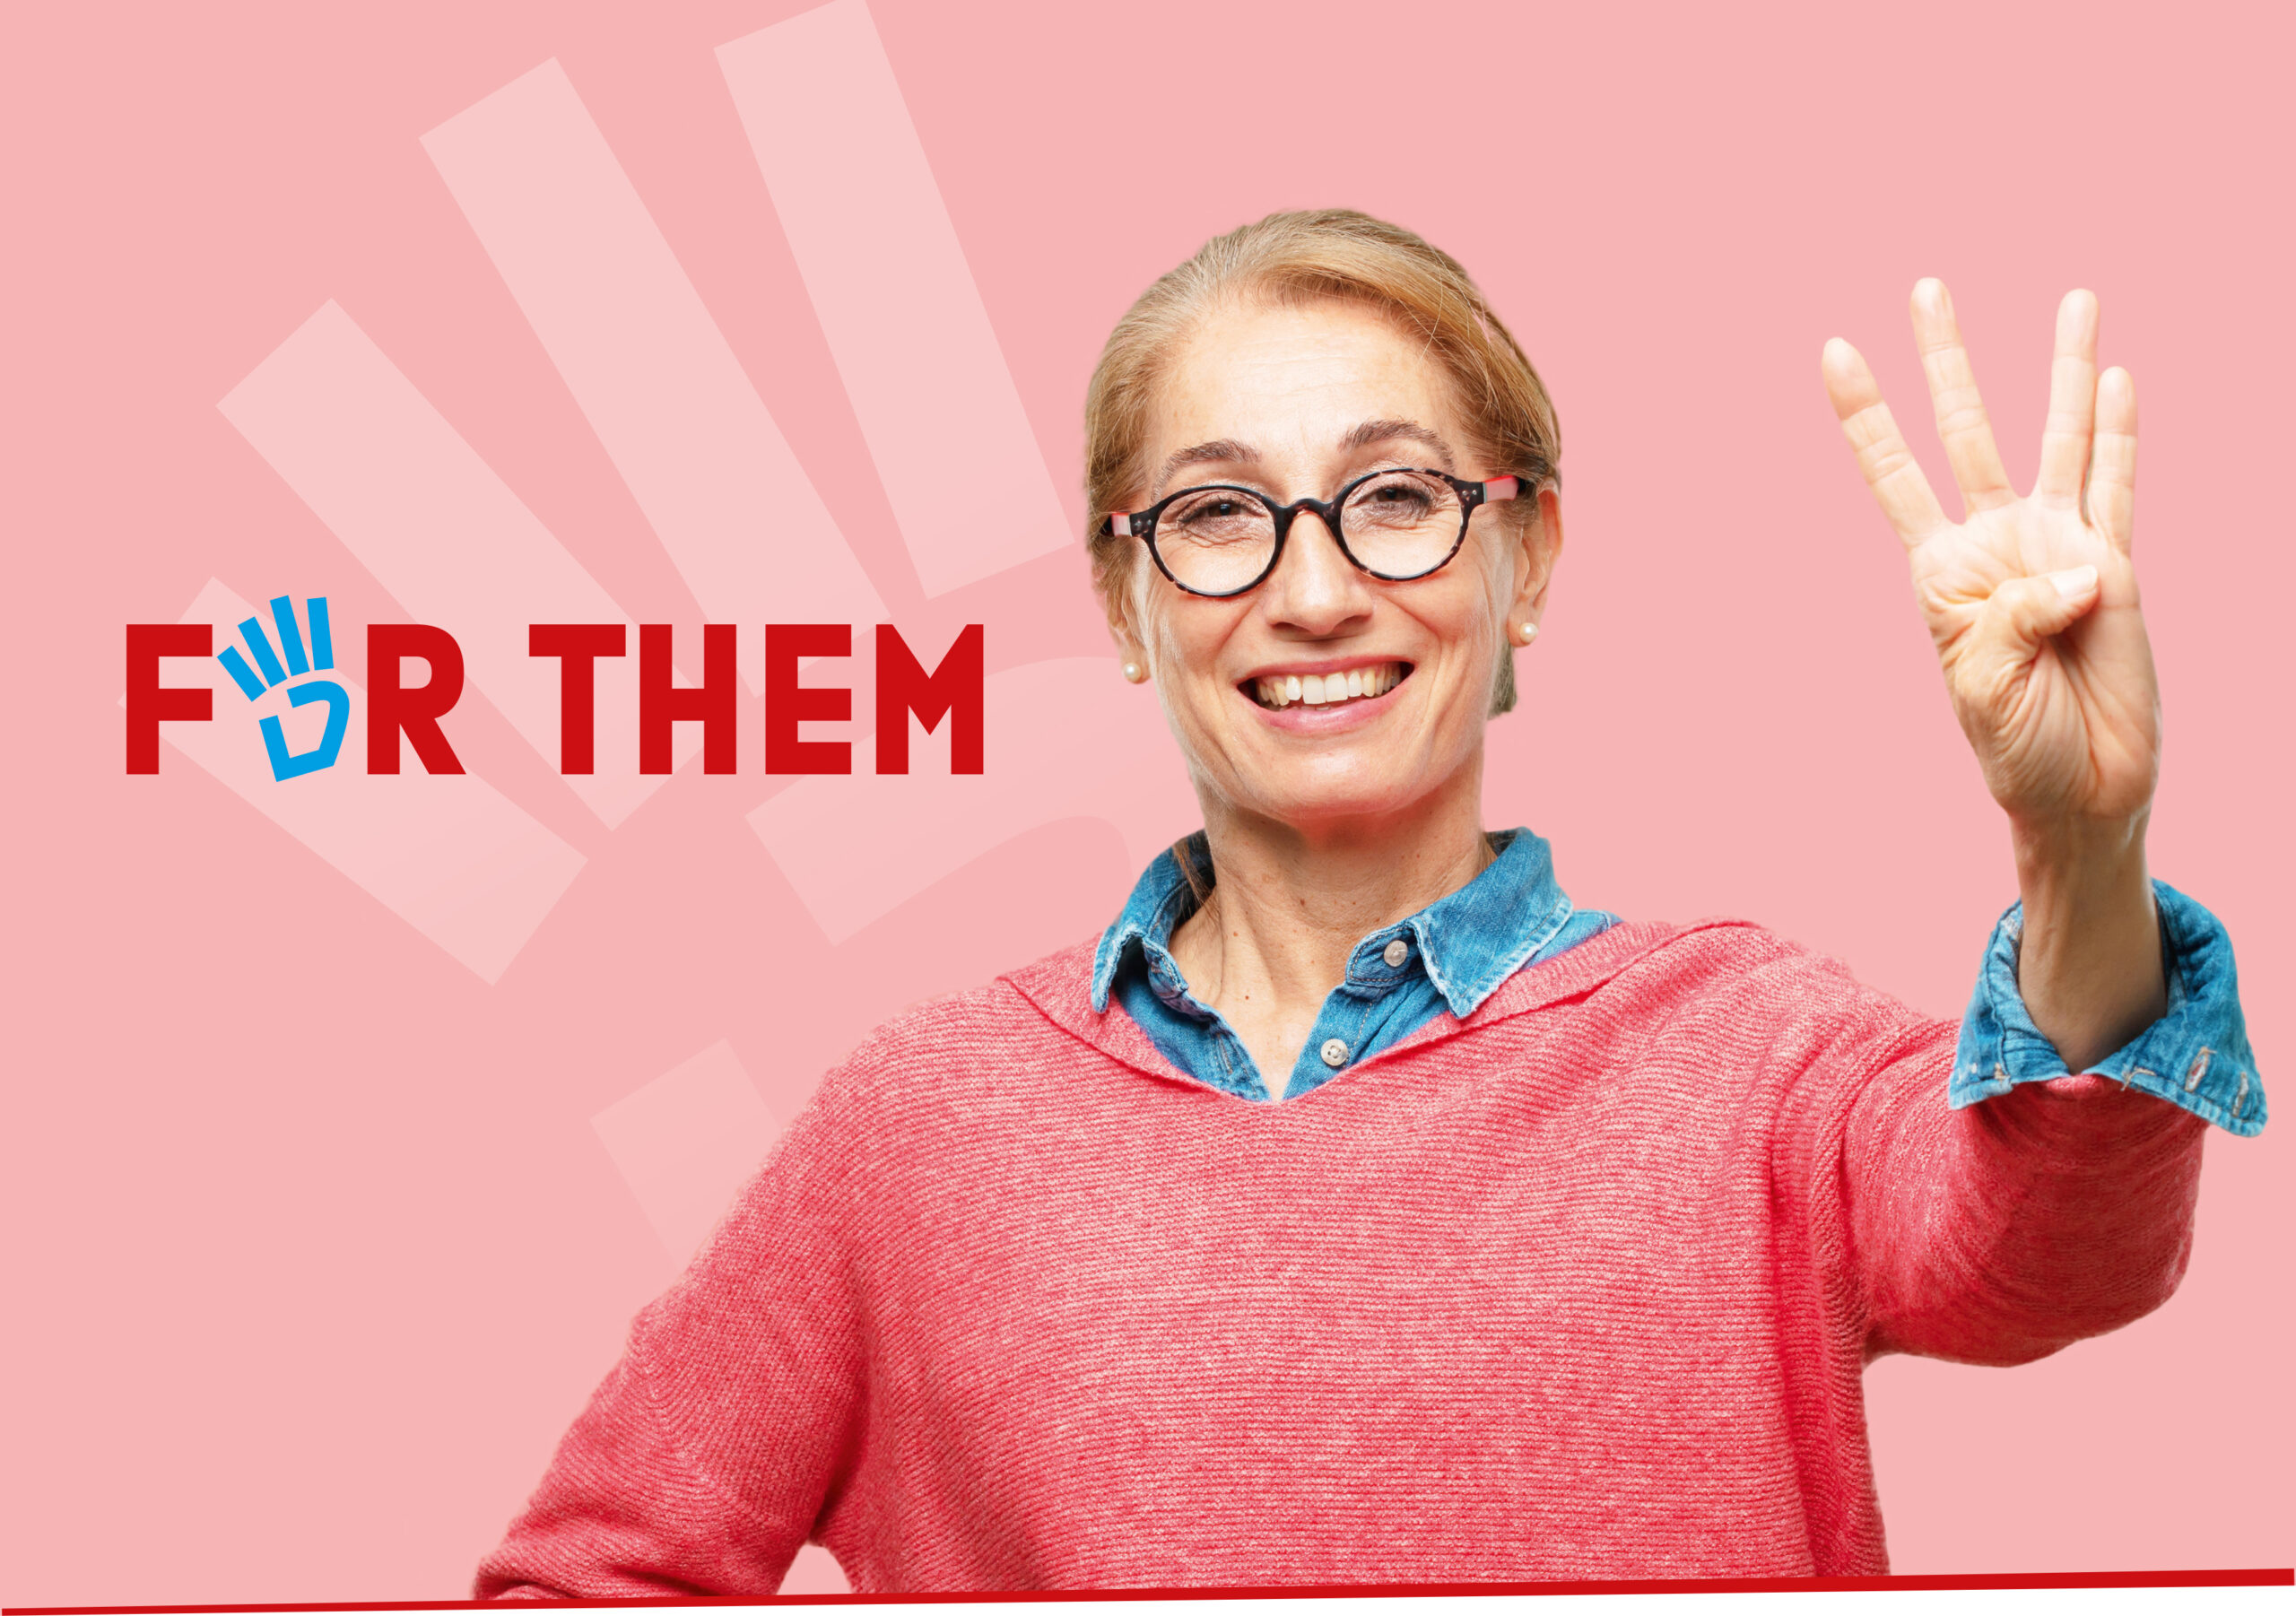 4Them - Frau hält 4 Finger hoch - das Zeichen der Kampagne Women4Youth